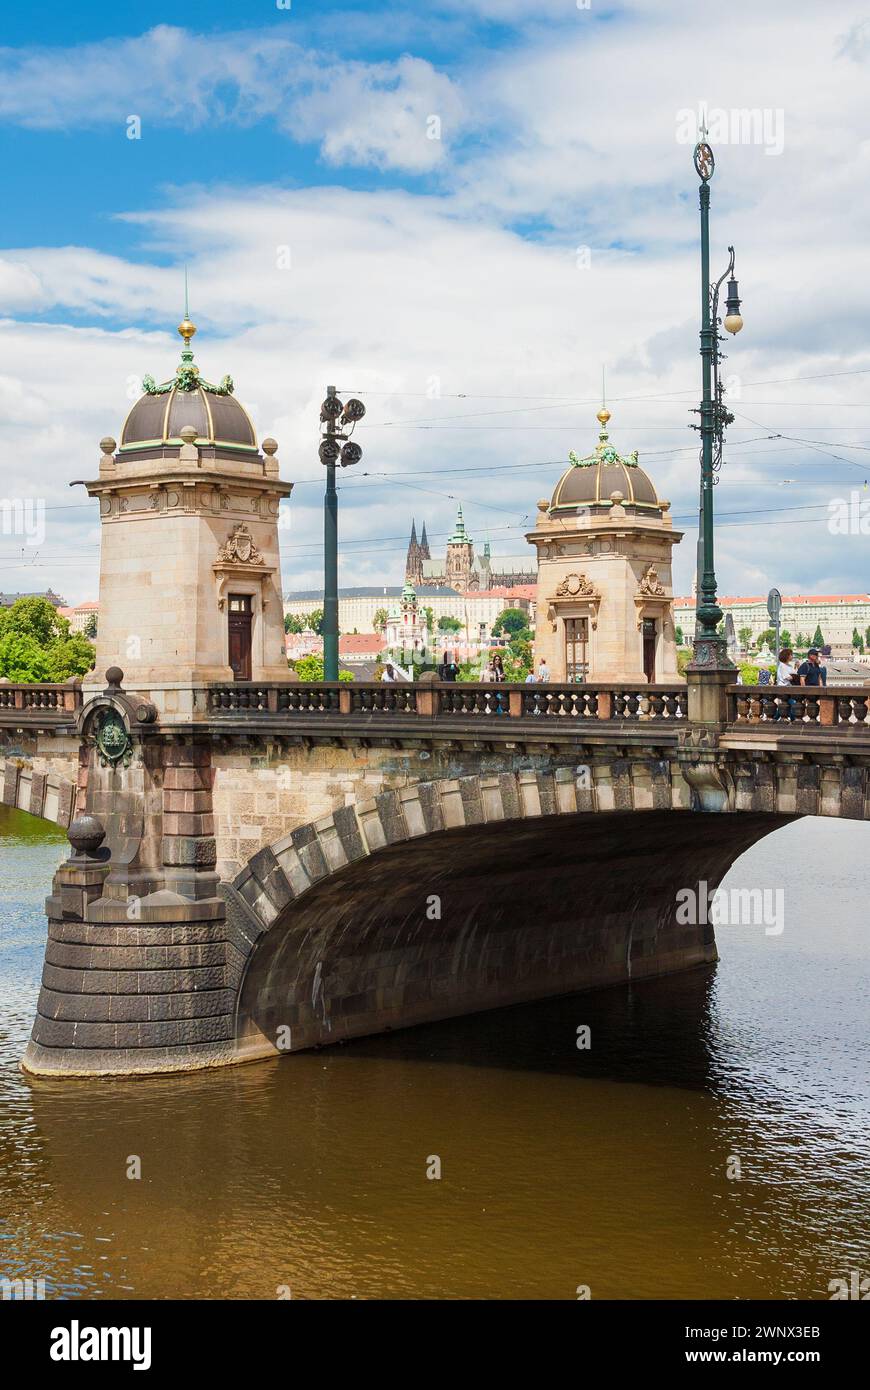 Les gens traversent le magnifique pont de la Légion avec le château de Prague en arrière-plan Banque D'Images